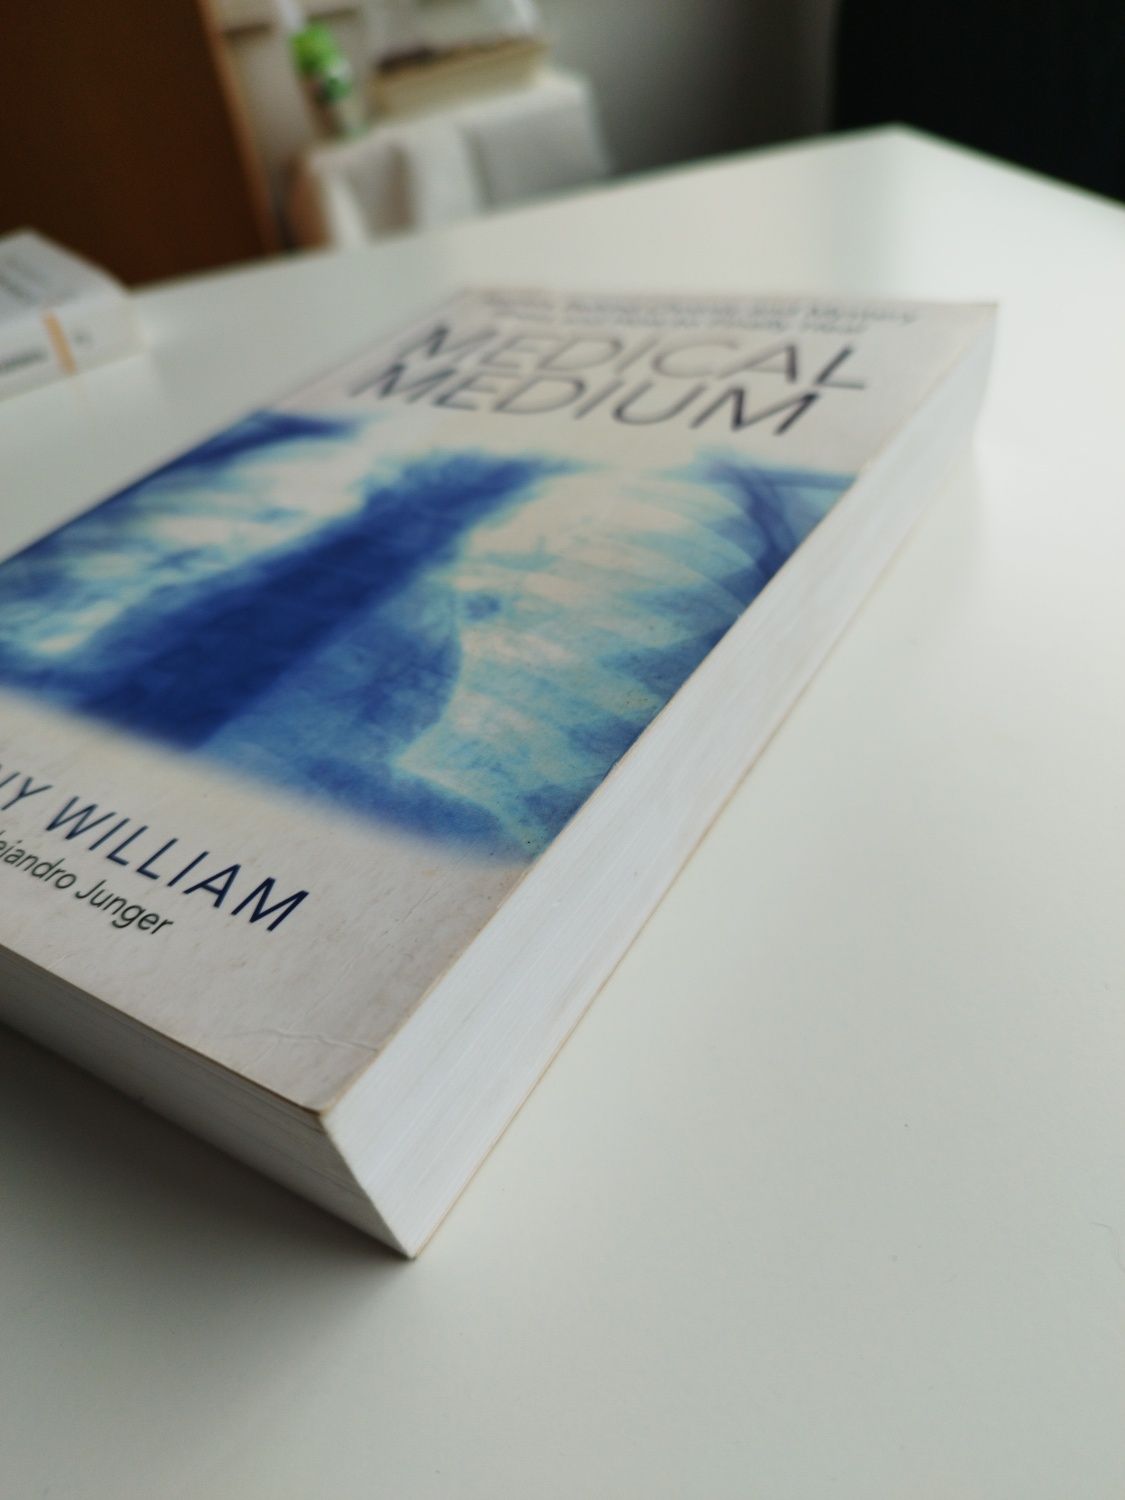 Livro "medical médium"